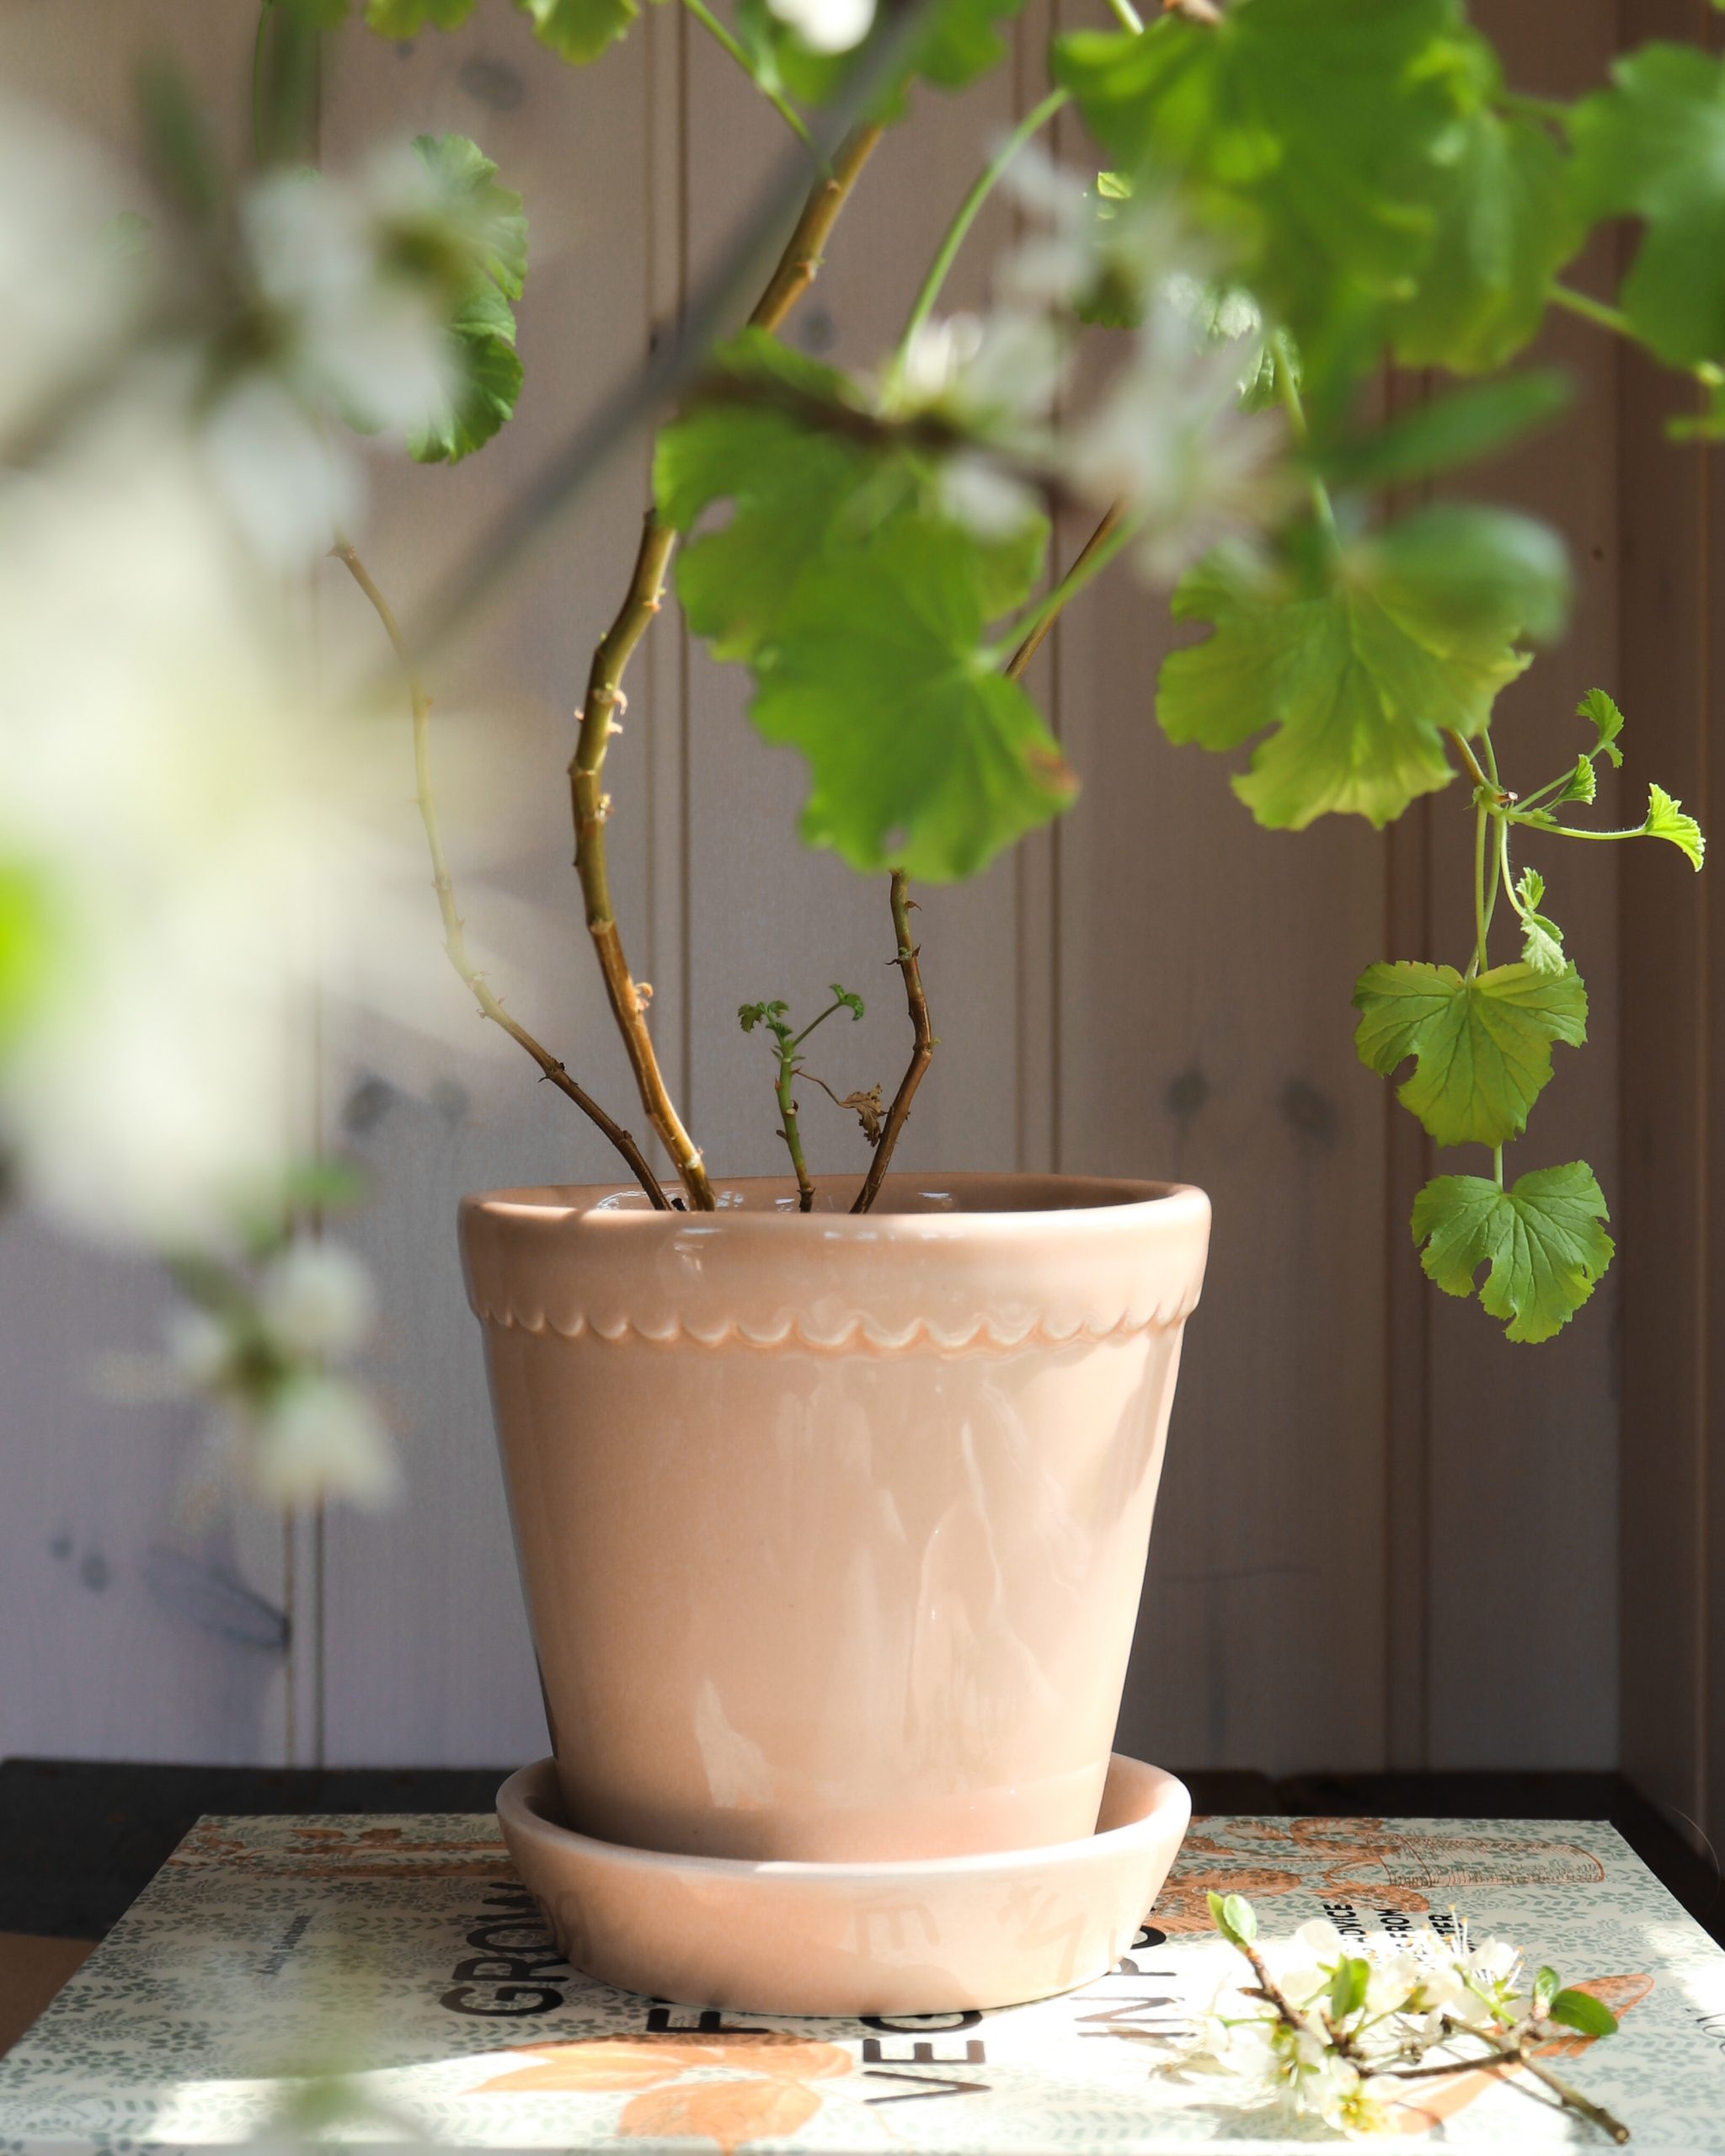 Quartz rose pots with plant.